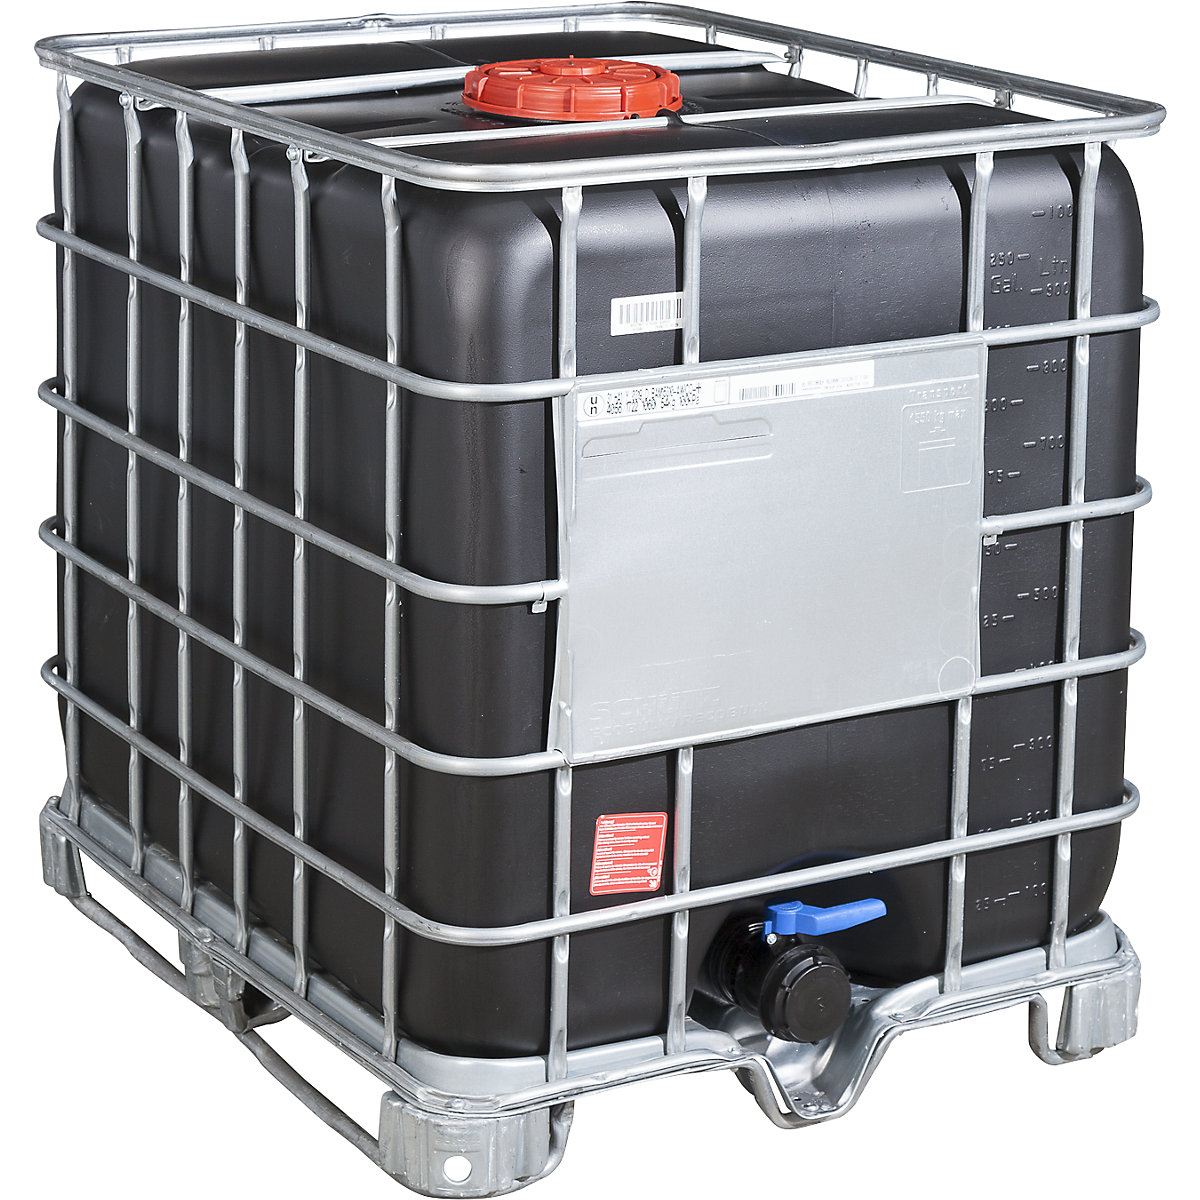 IBC kontejner RECOBULK s UV zaštitom i UN dozvolom, volumen 1000 l, od palete čeličnih kliznika, nazivni promjer otvora 225 mm / nazivni promjer izlaza 80 mm